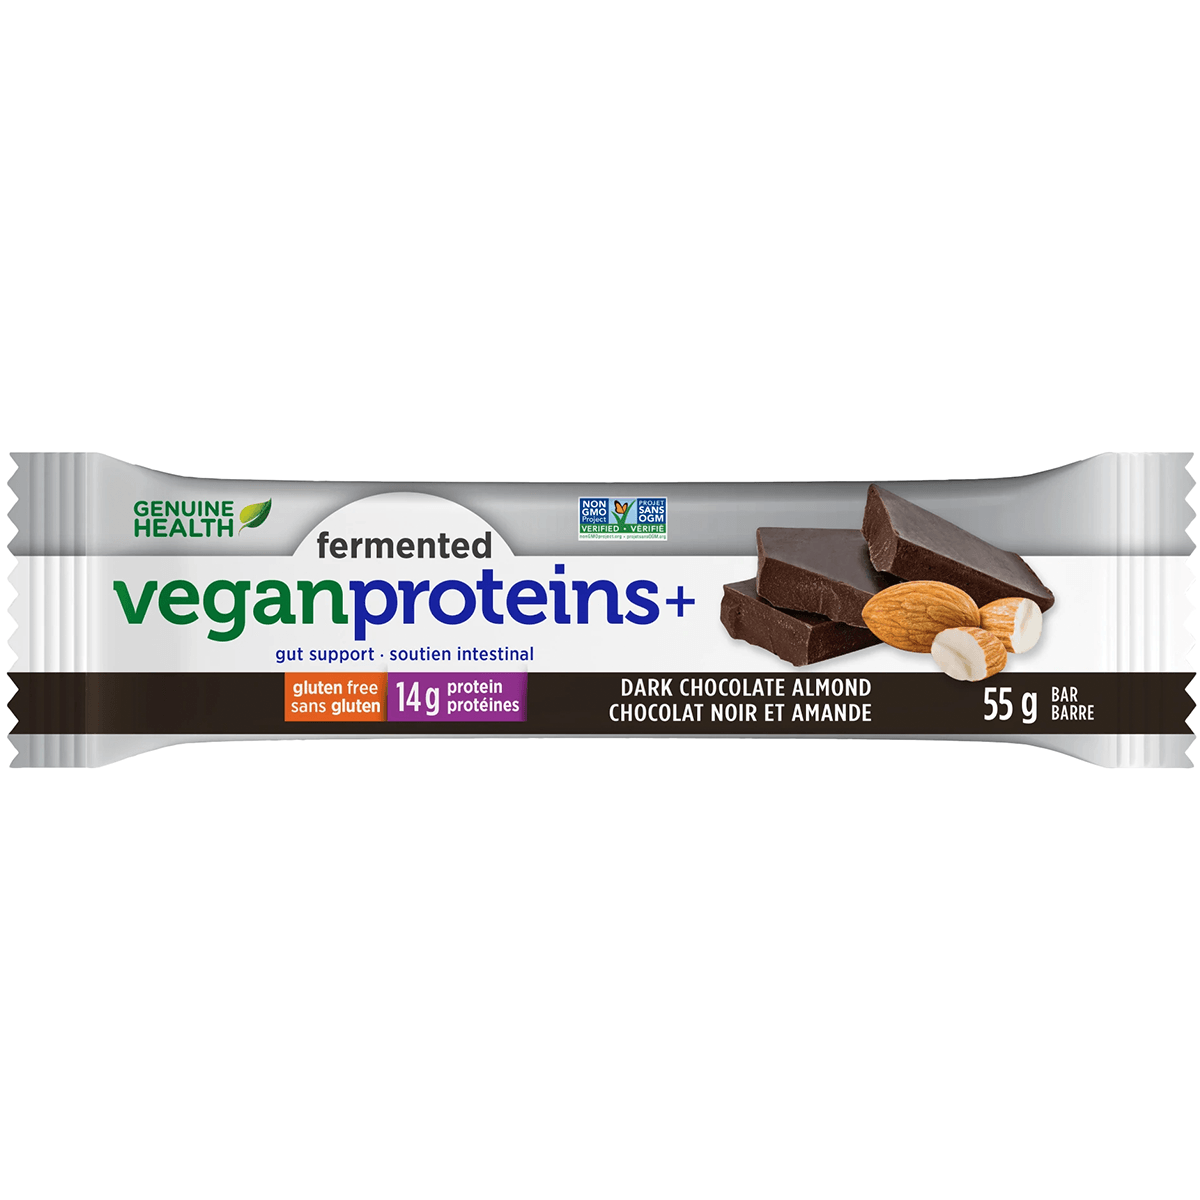 Genuine Health Fermented Vegan Protein+ Bar Chocolate Almond 55g Supplements - Protein at Village Vitamin Store